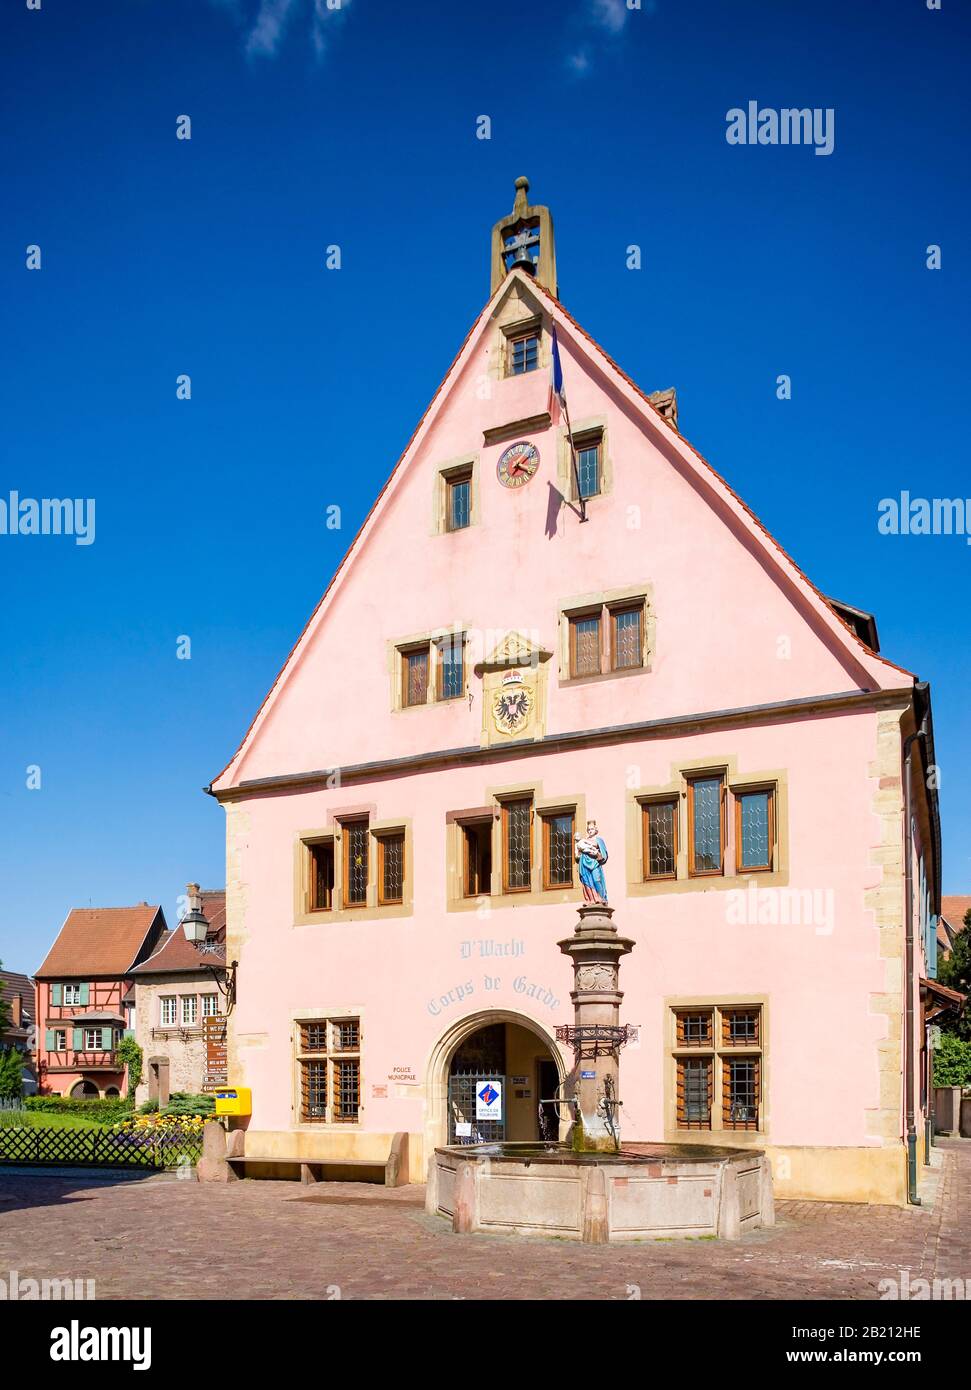 Place Turenne mit Gildenhaus, Tuerkheim, Elsaß, Frankreich Stockfoto